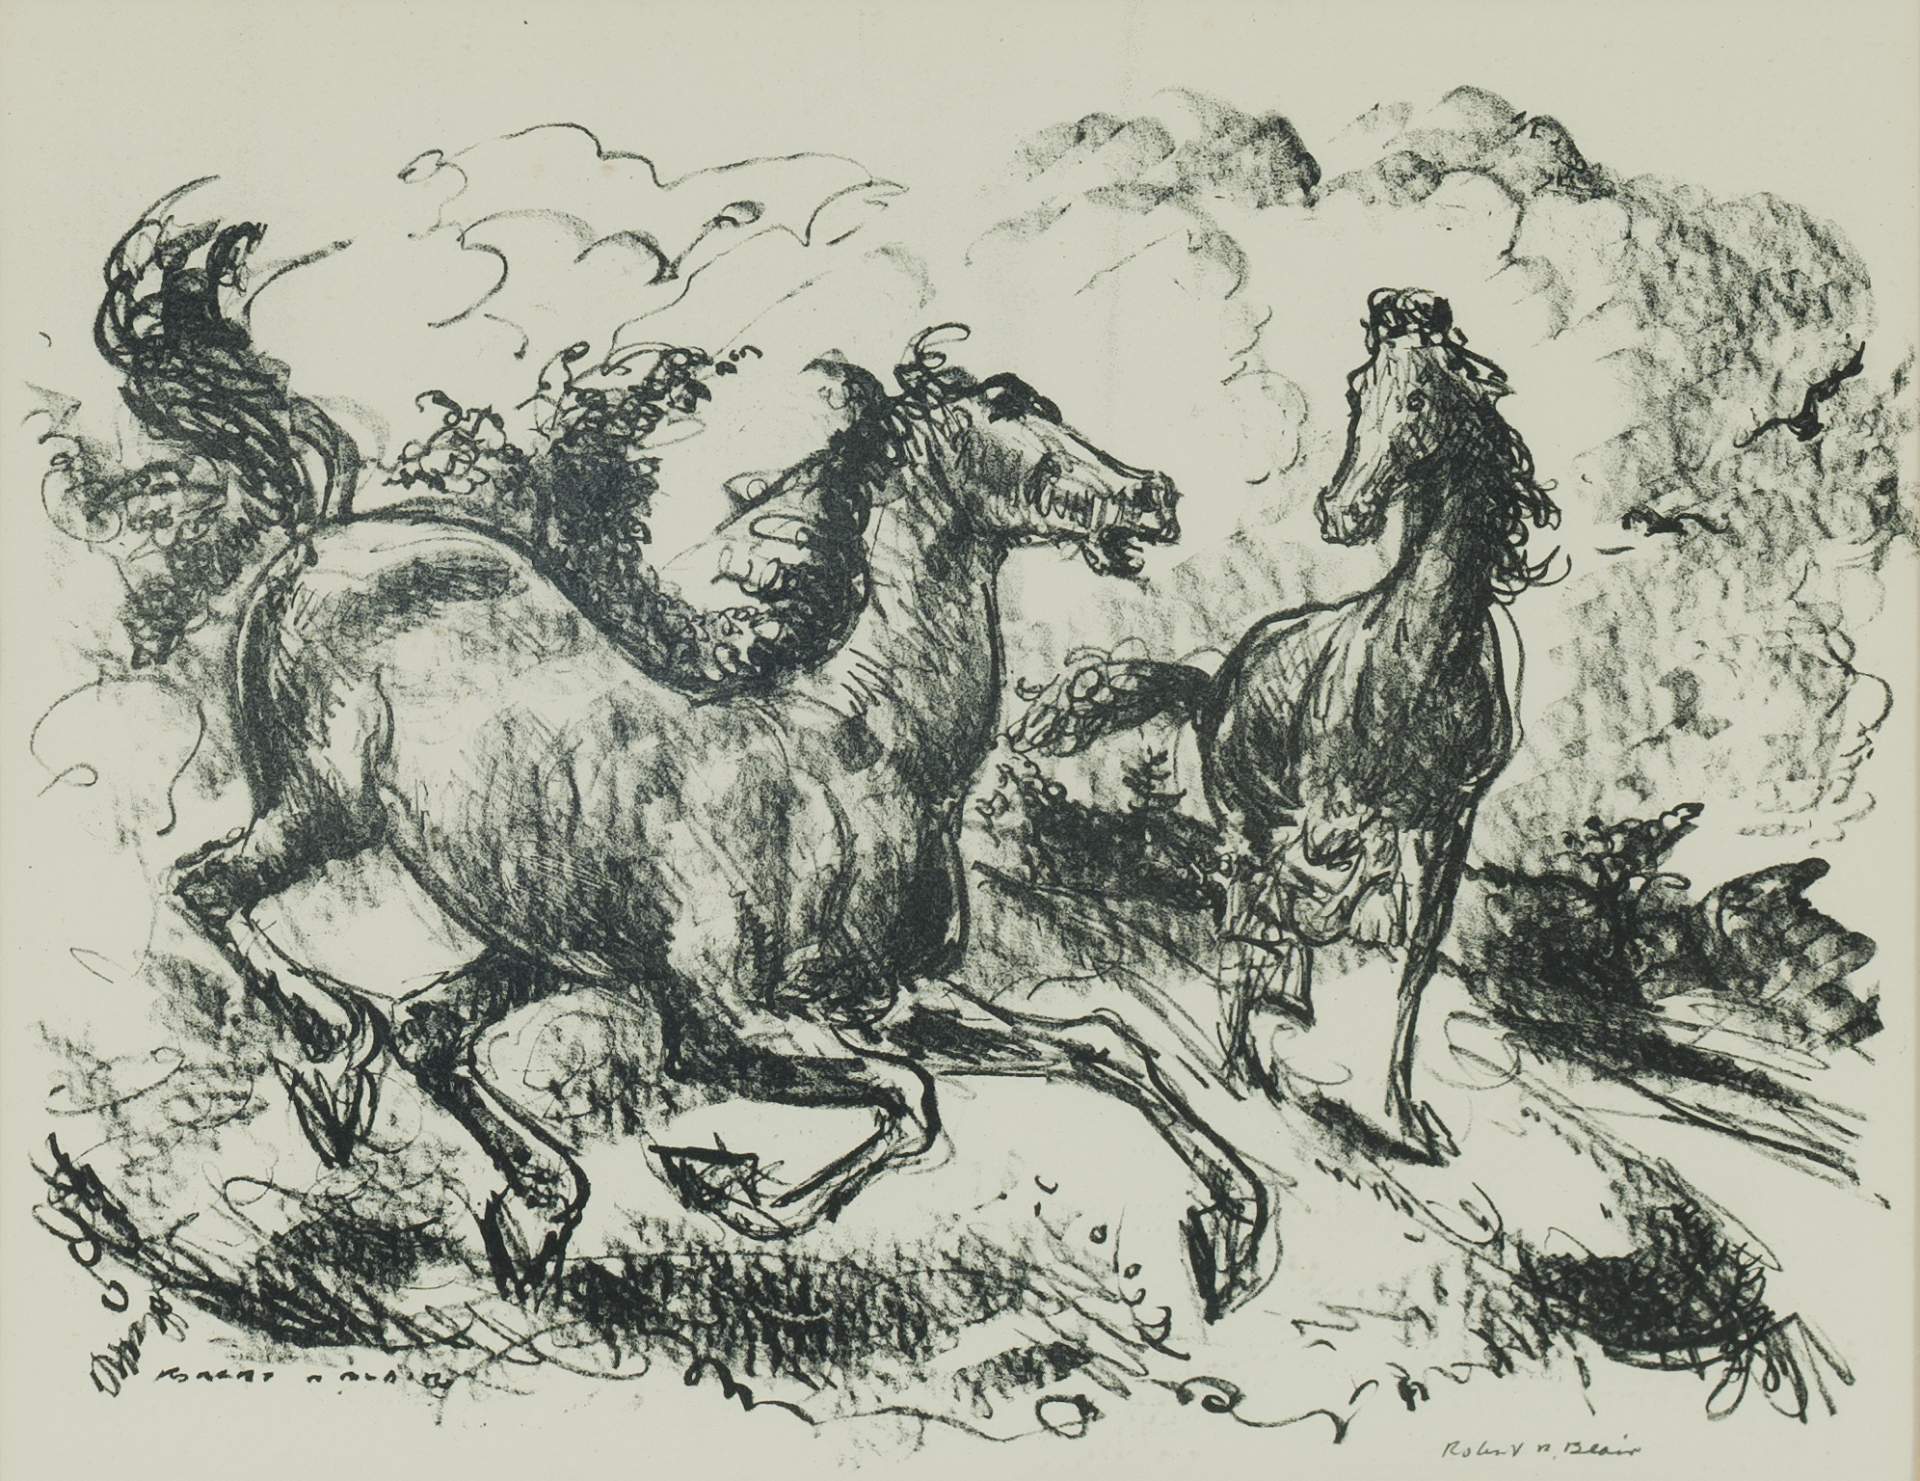 Robert Blair's Horses by Nancy Weekly